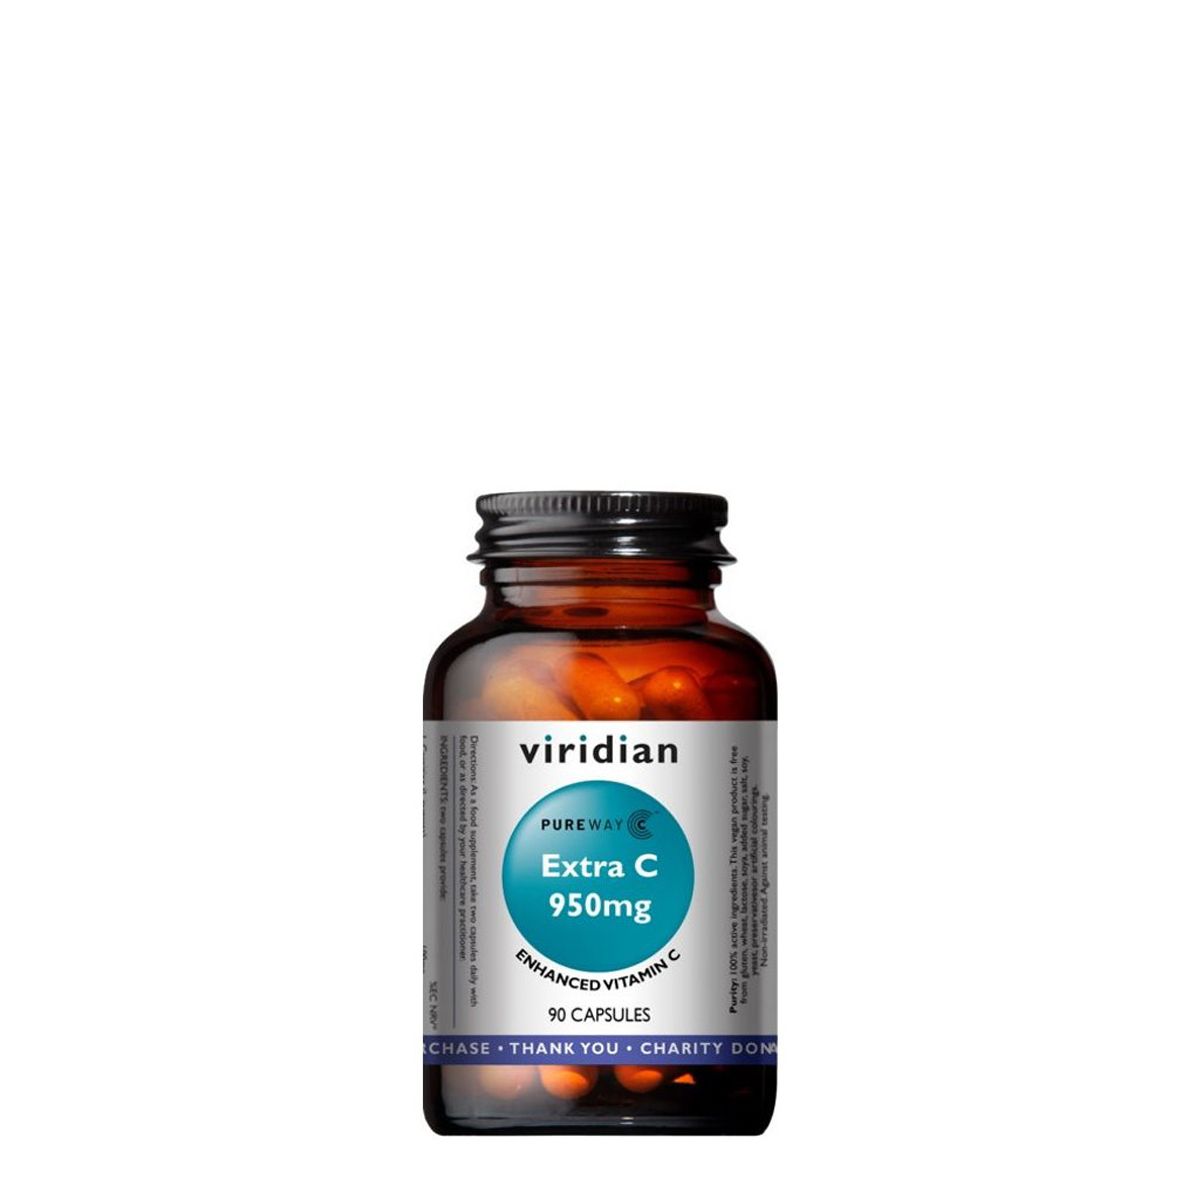 C-vitamin 950 mg, Viridian Extra C 950 with PureWay-C, 90 kapszula